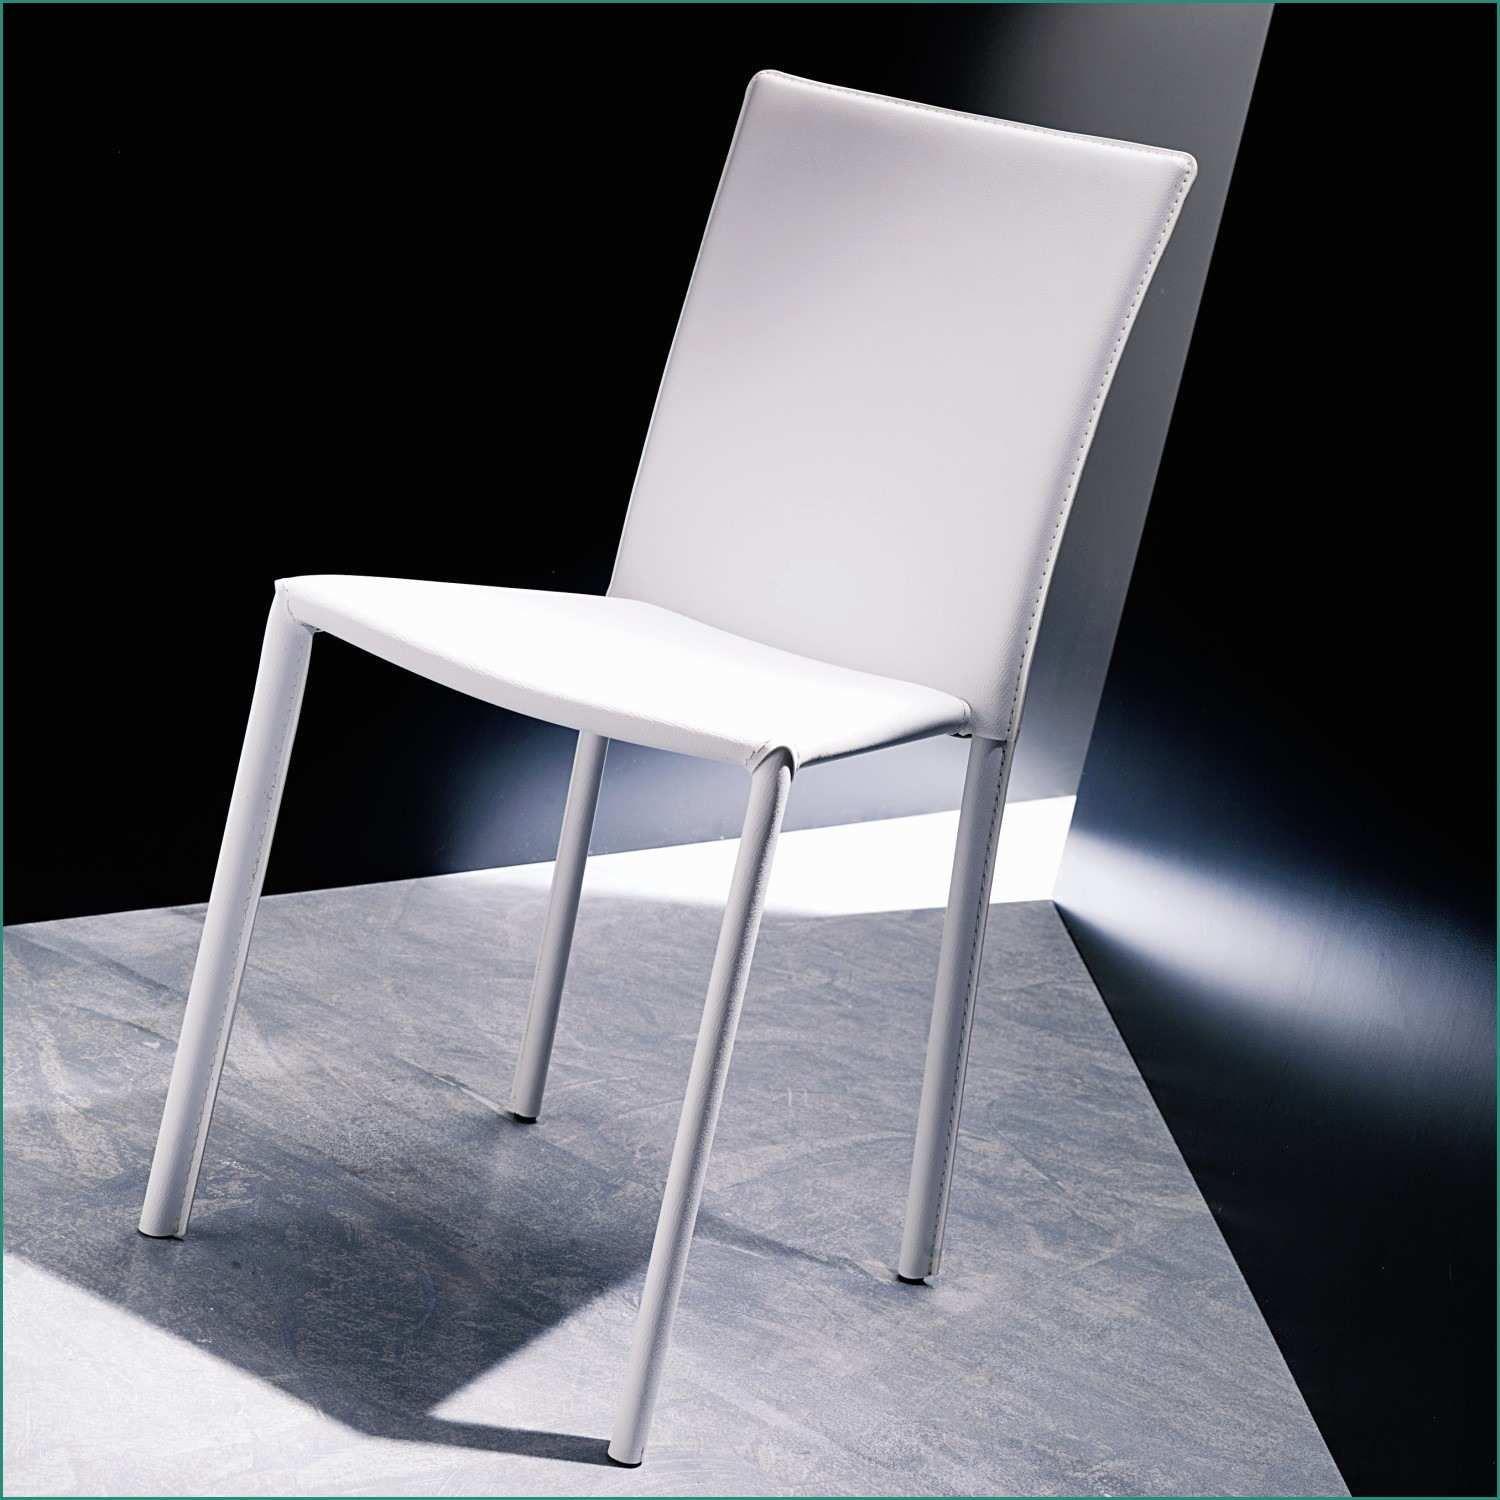 Sedie In Polipropilene E Se Line Moderne Bukadarfo = Galleria Di Se Foto E Le